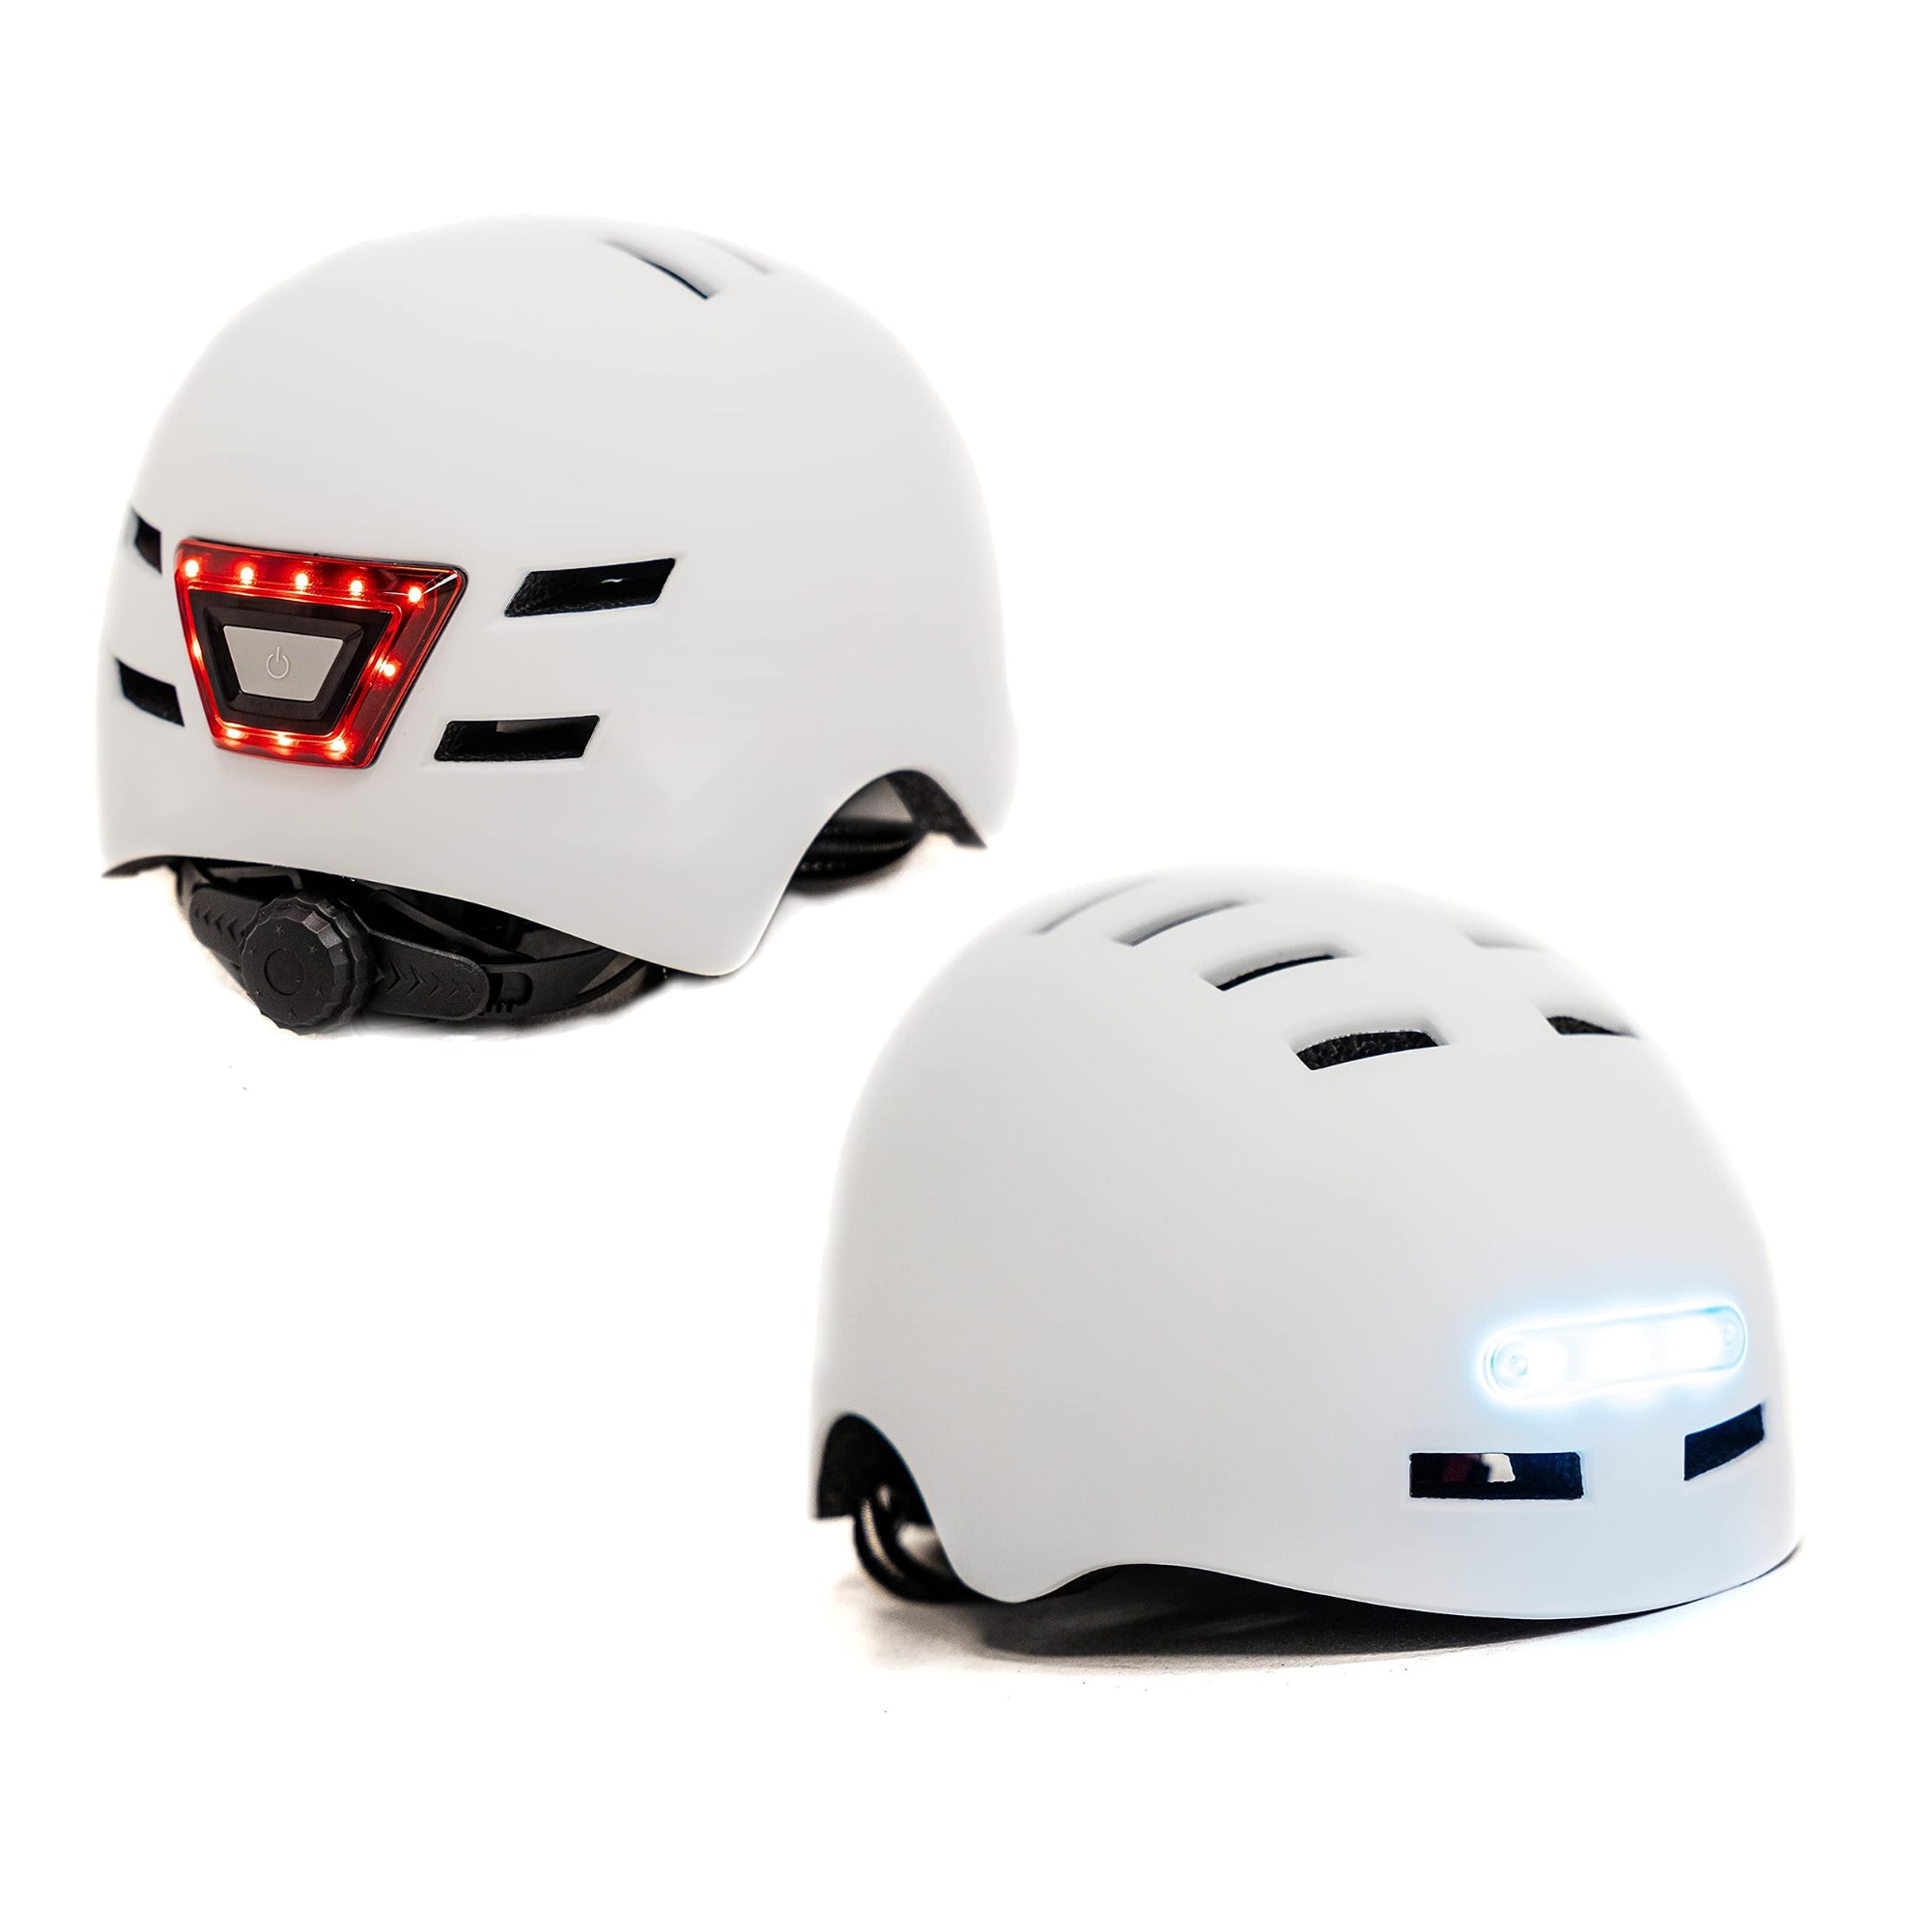 KY-Z002-MEDIUMWHITE BUSBI Firefly Adult Helmet - Medium White